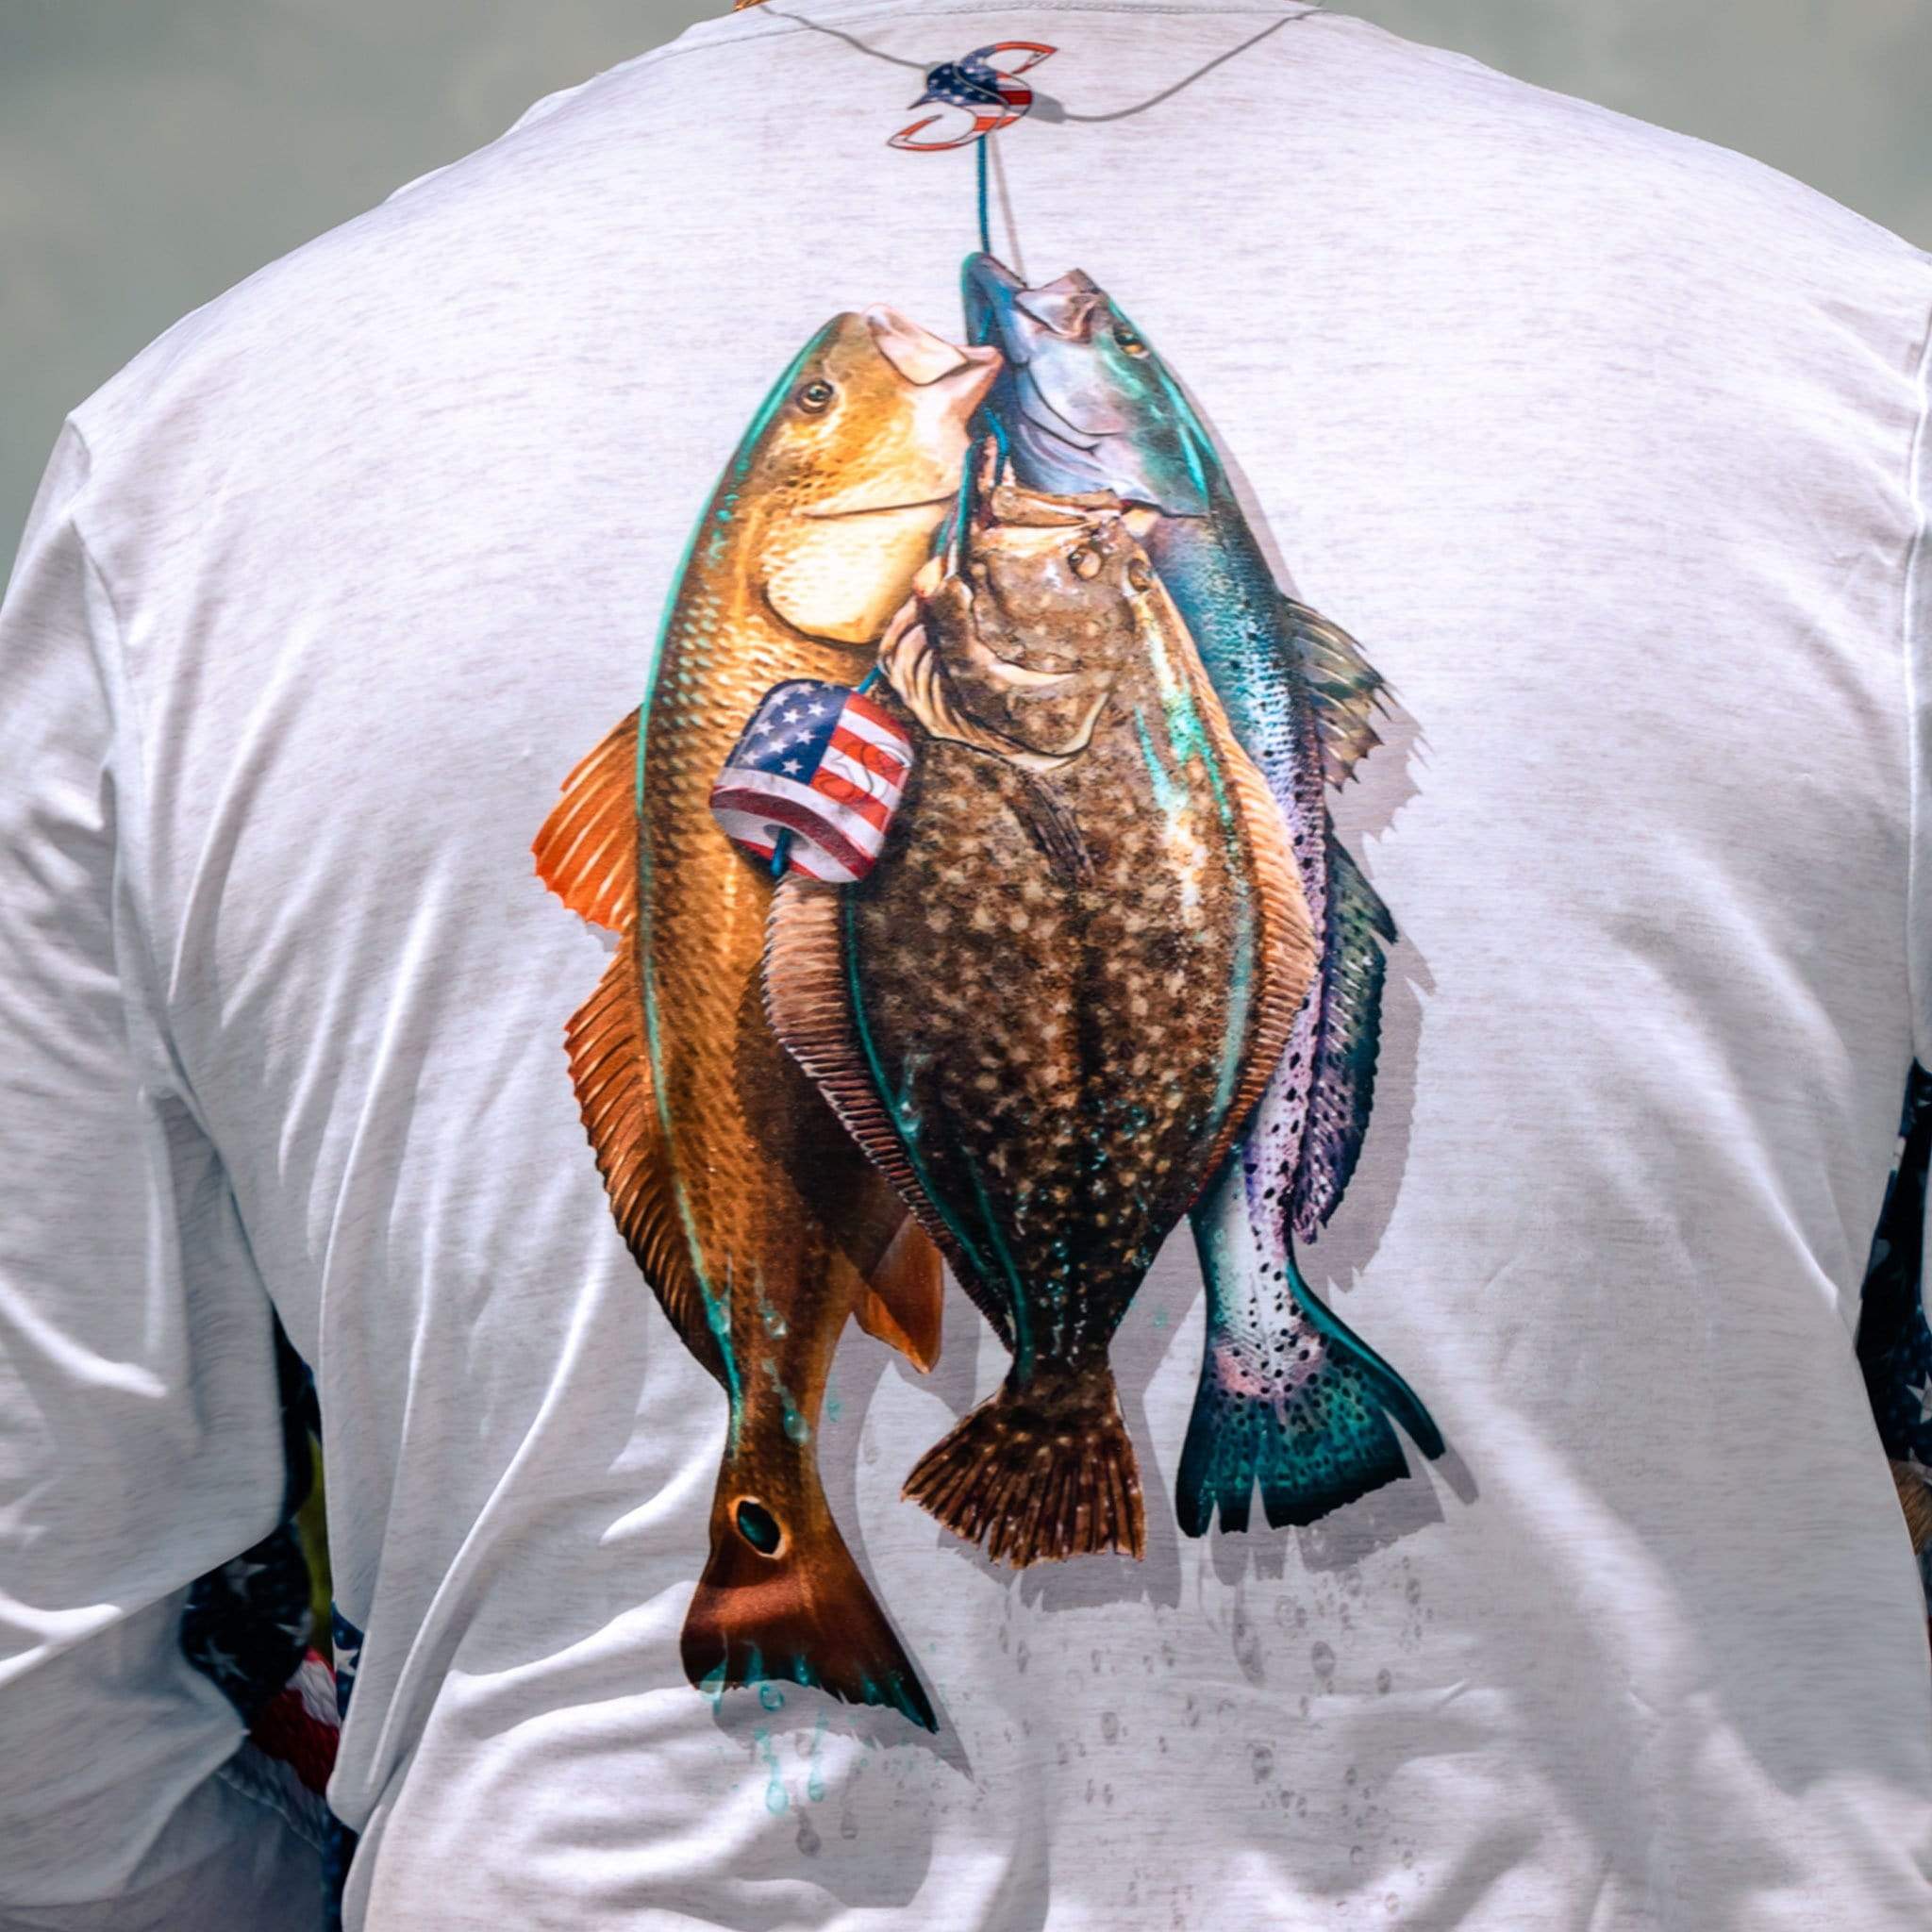 American Flag Stringer Long Sleeve Fishing Shirt